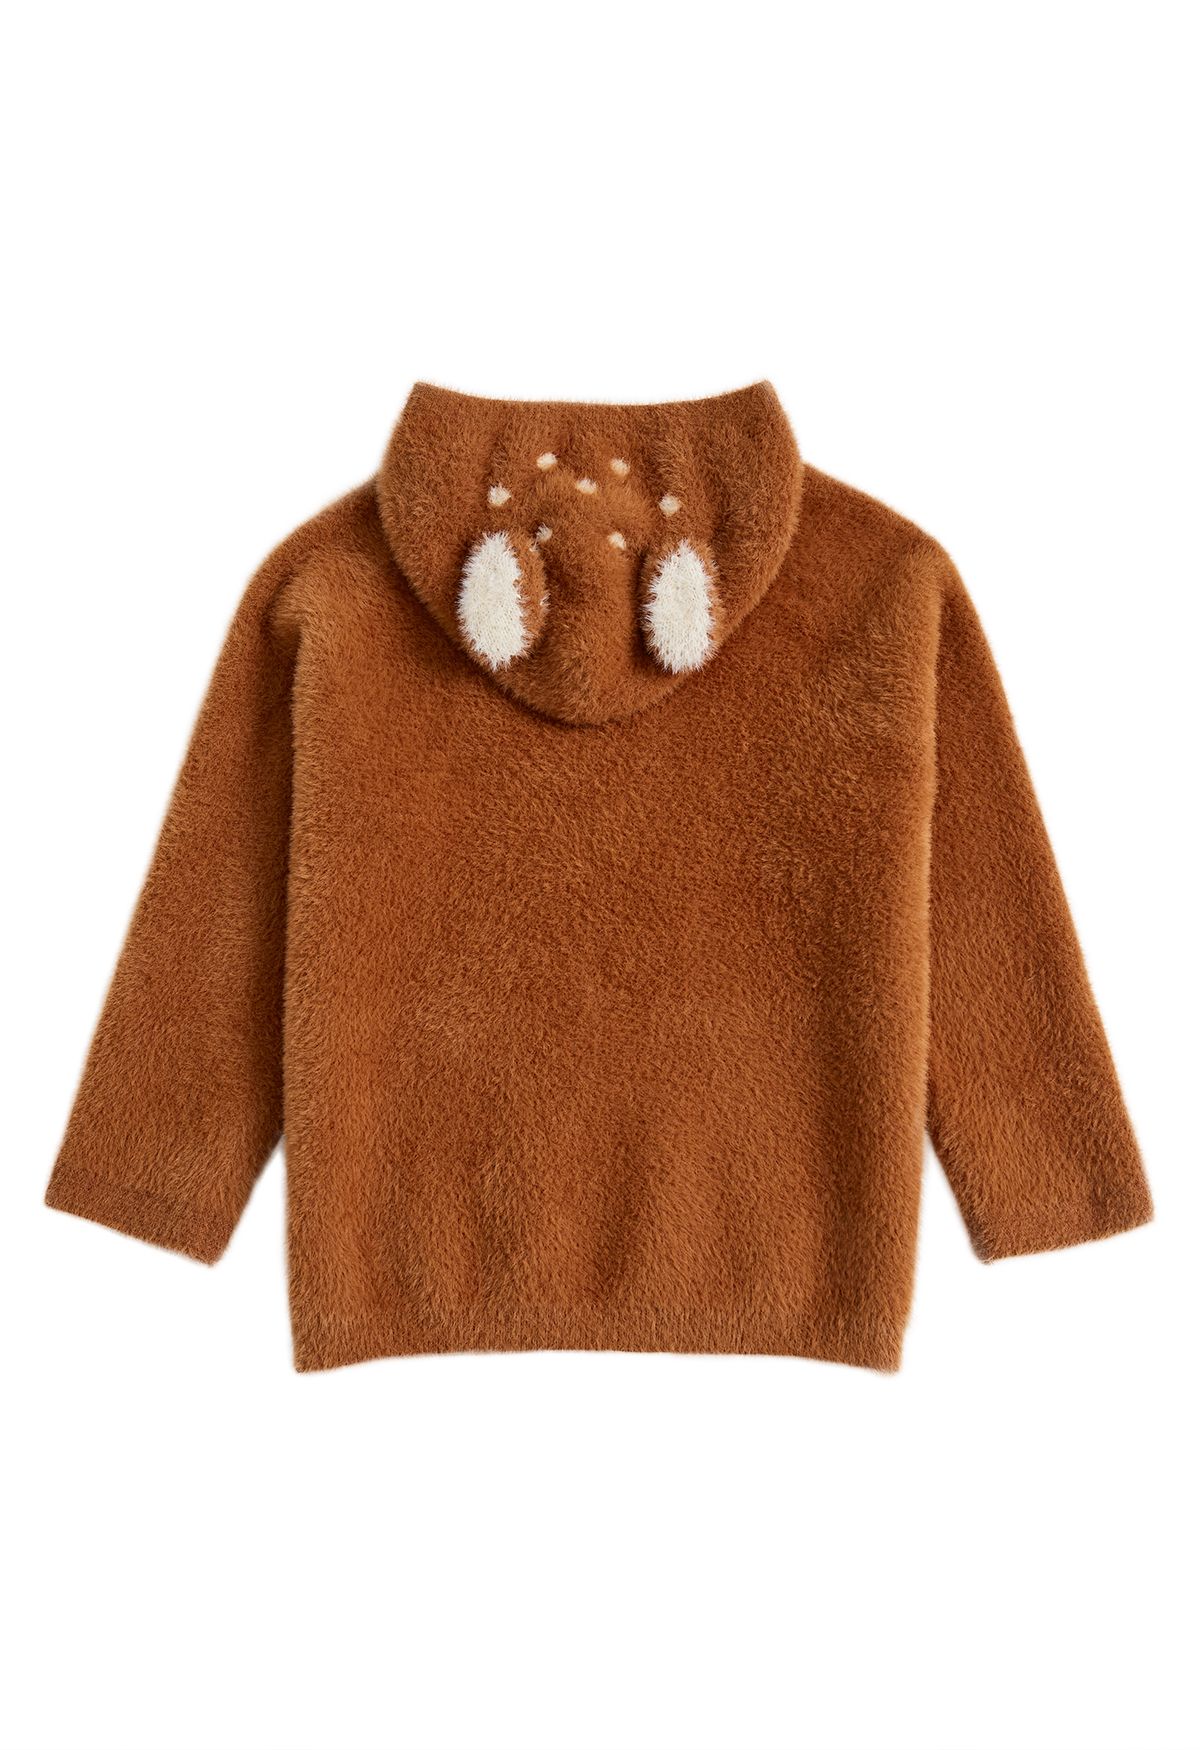 Maglione con cappuccio Sika Deer Fuzzy Knit in caramello per bambini